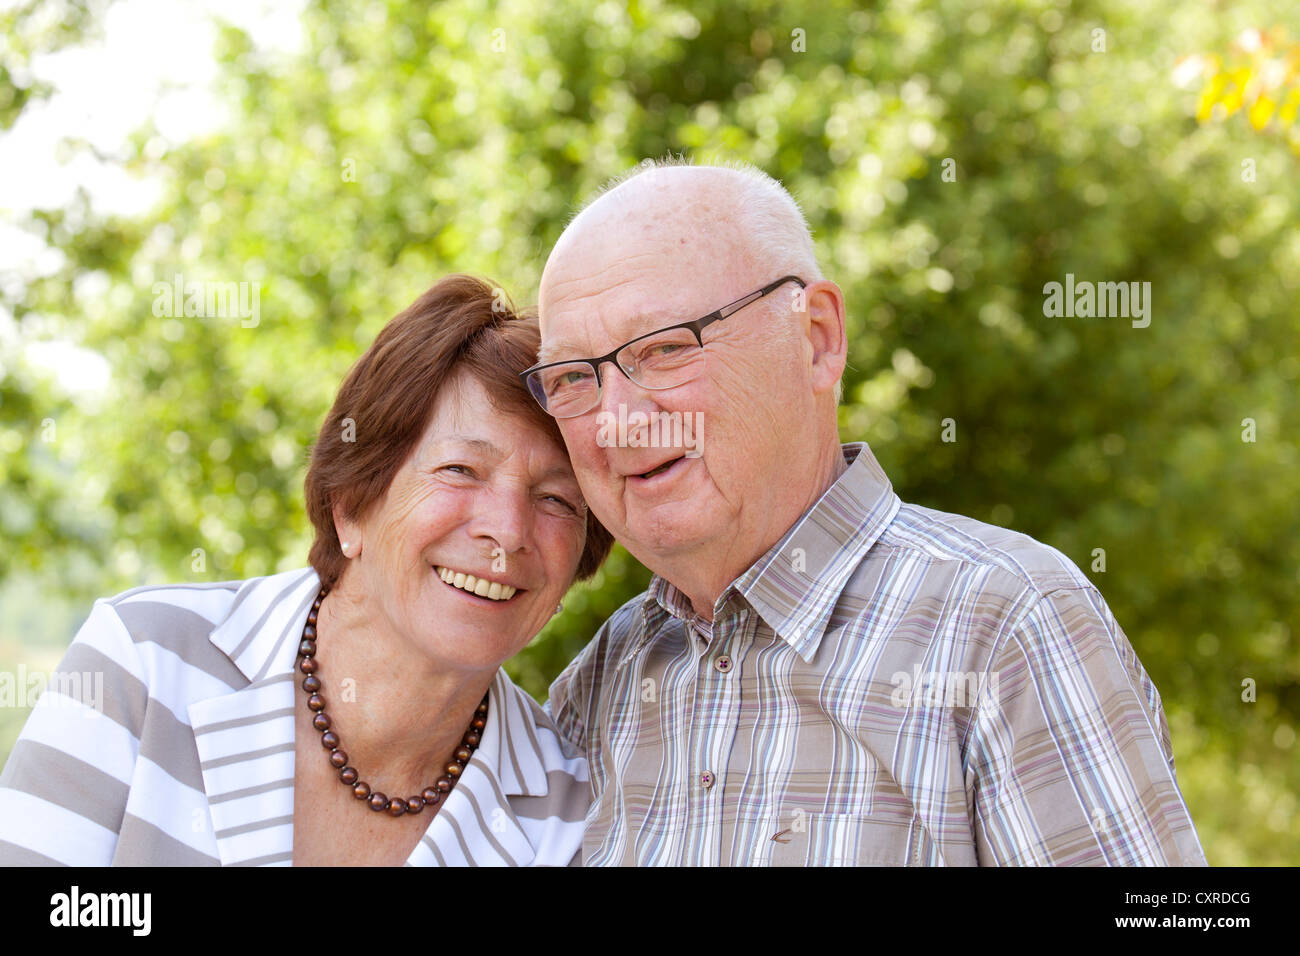 Elderly couple, retirees, 70-80 years old, Bengel, Rhineland-Palatinate, Germany, Europe Stock Photo